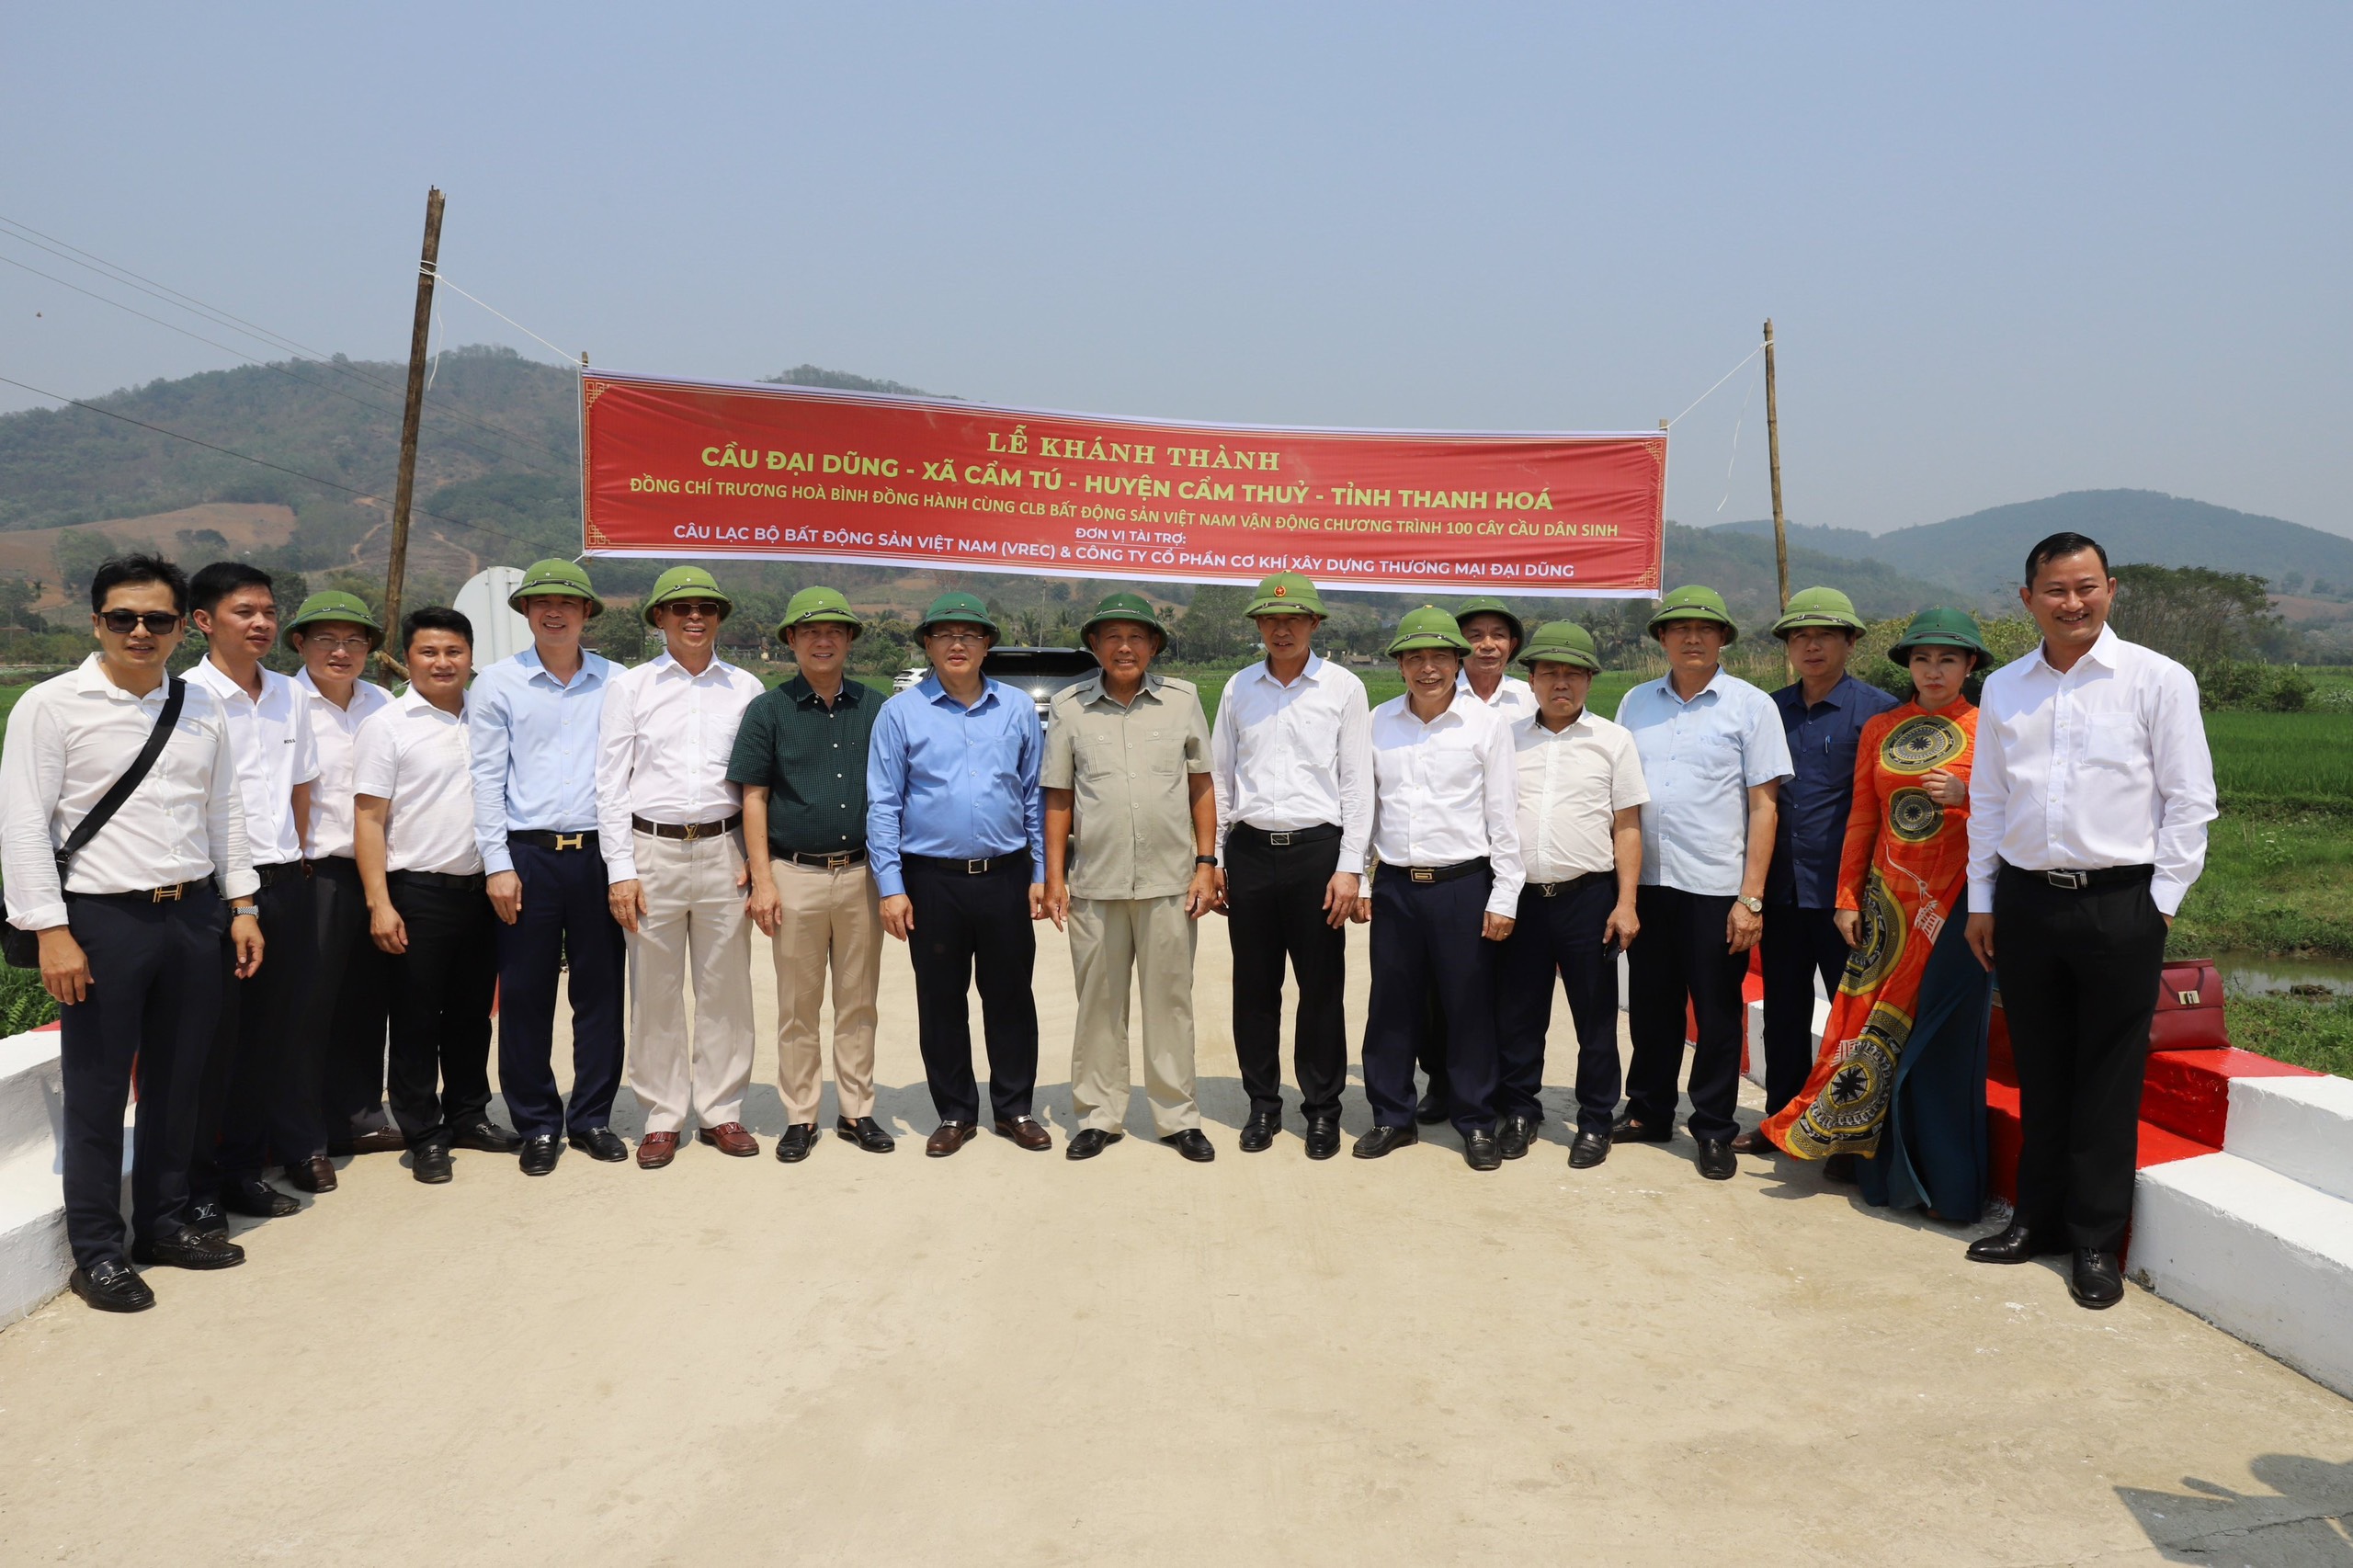 Câu lạc bộ bất động sản Việt Nam tổ chức Lễ khánh thành 4 cây cầu tại tỉnh Thanh Hóa